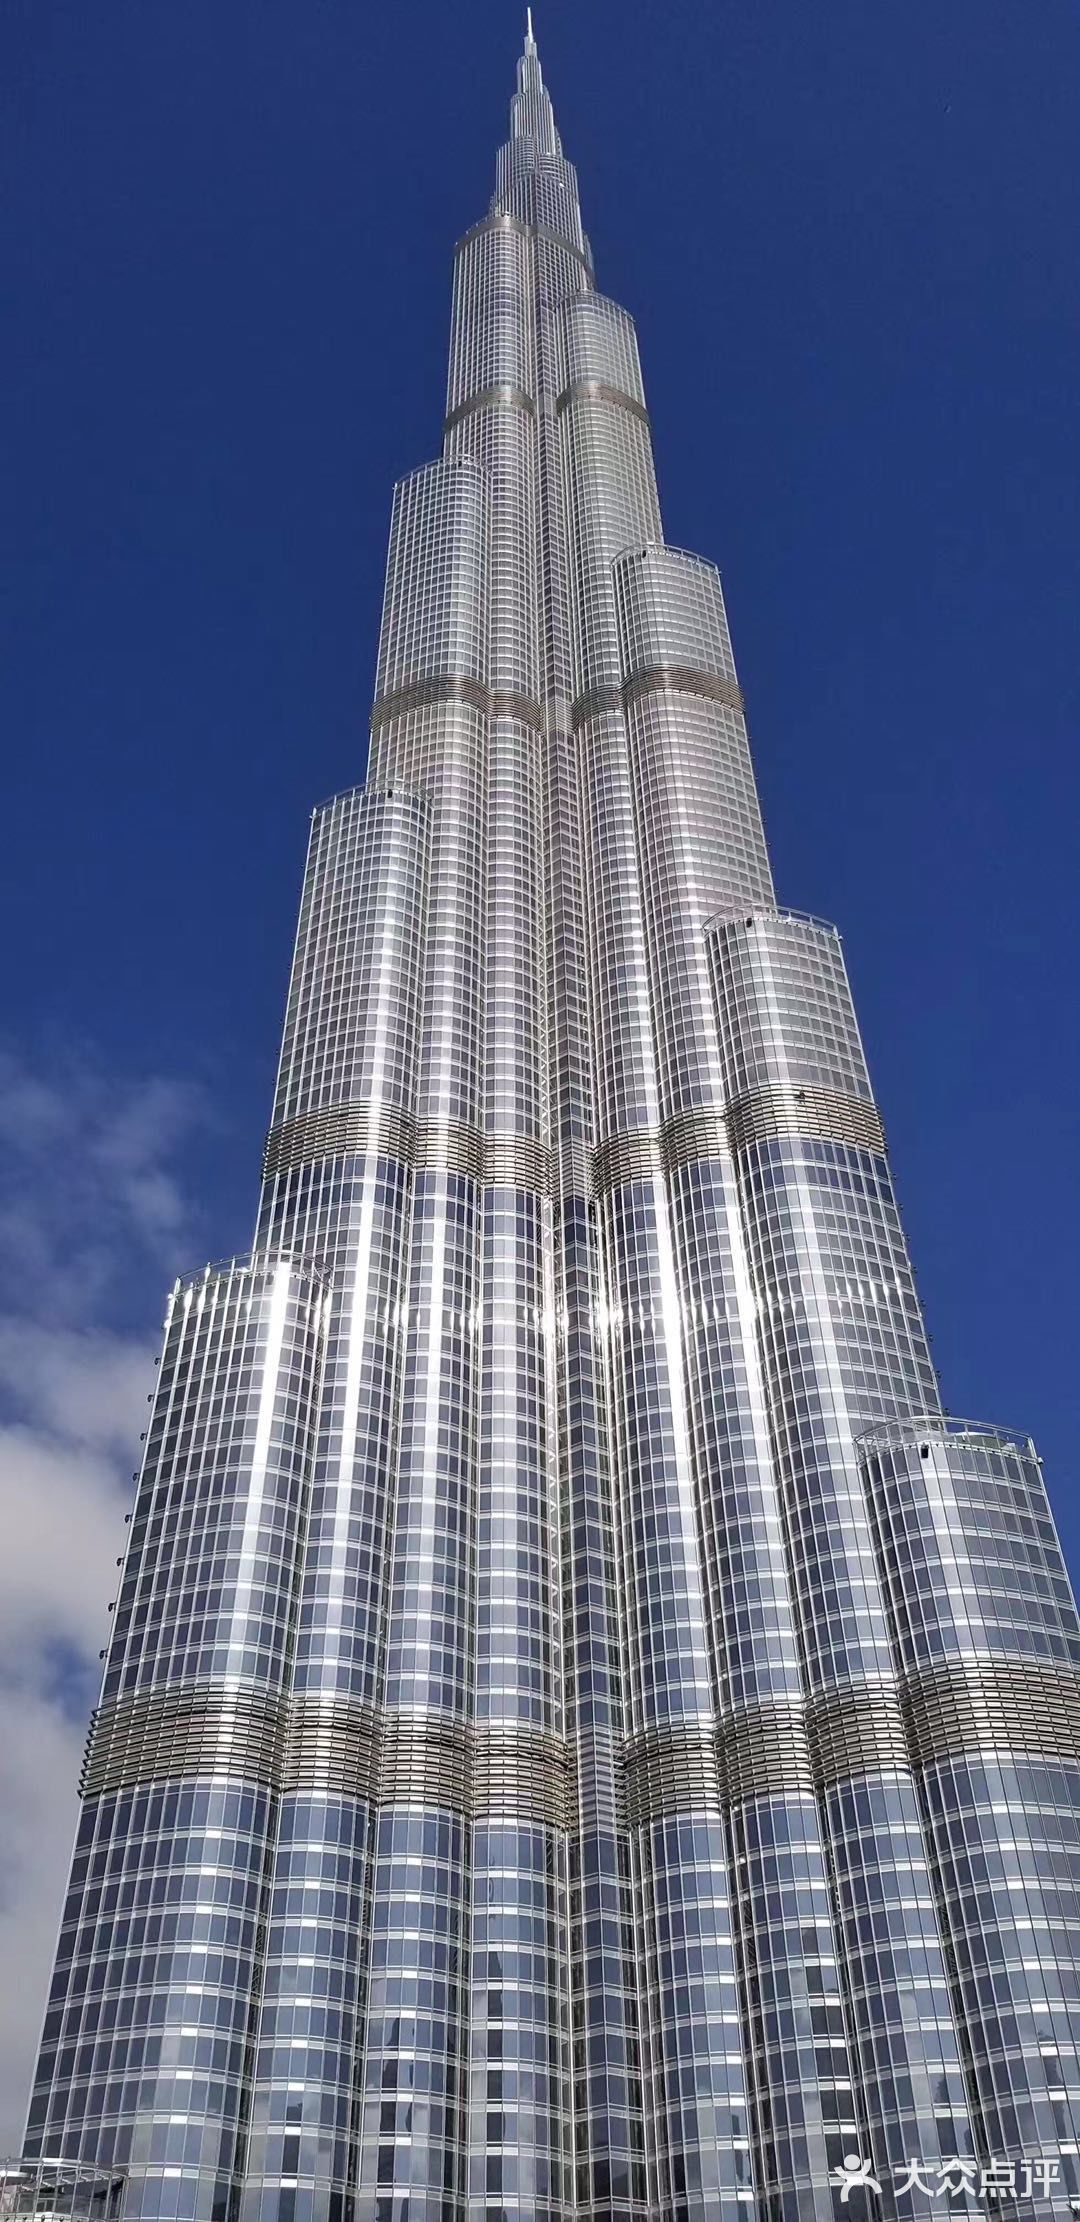 迪拜塔是全球名副其实的摩天大楼为世界第一高楼